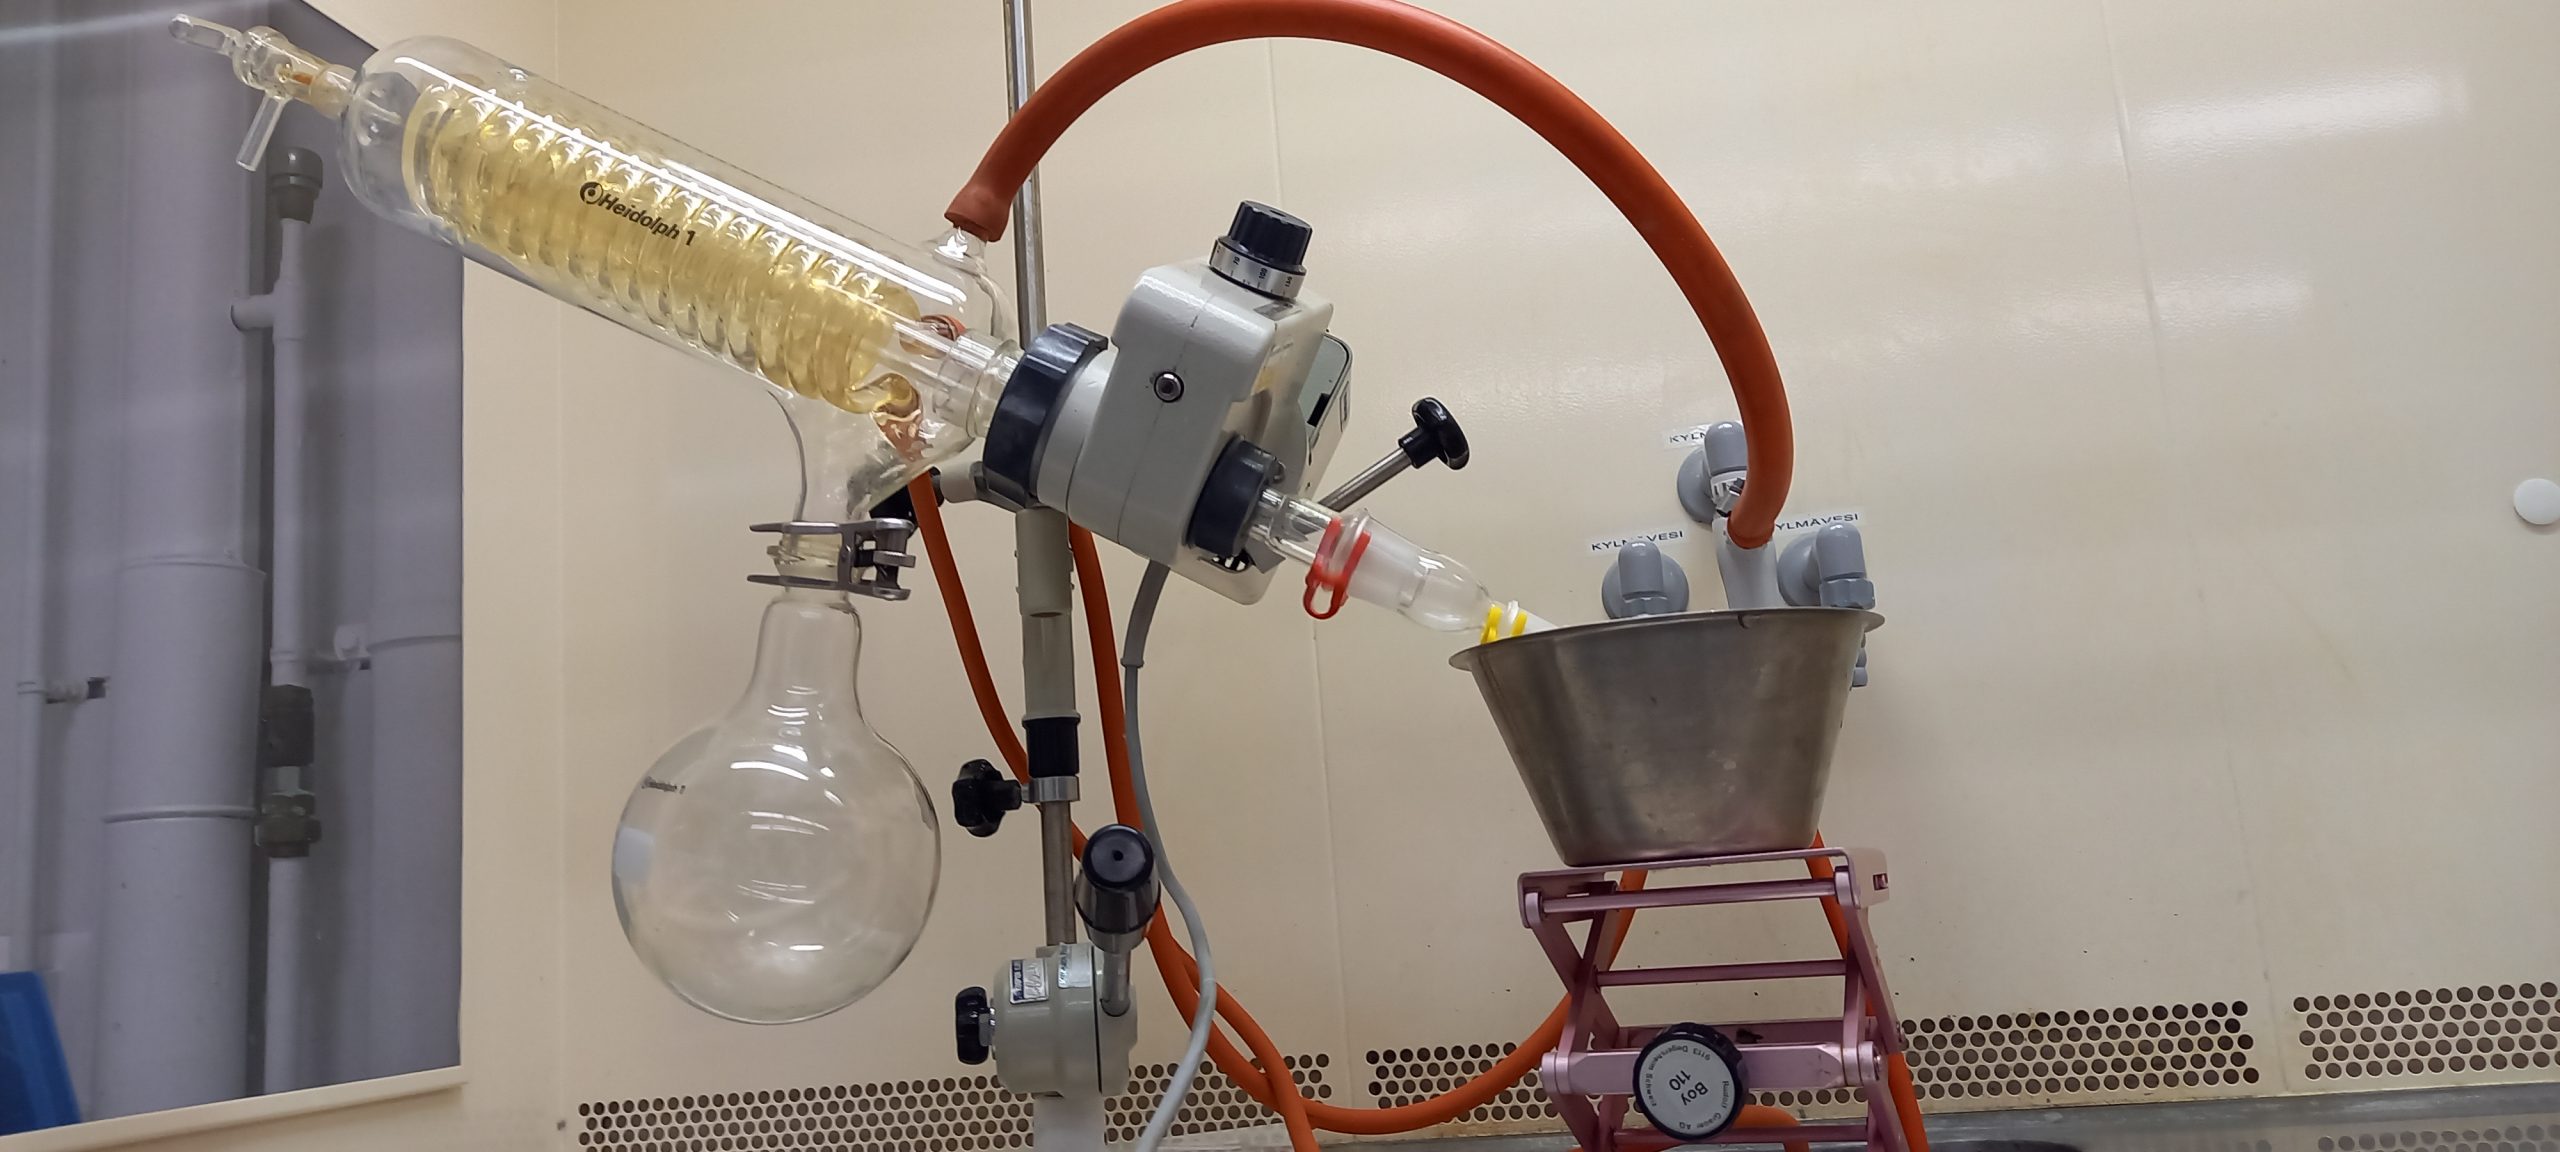 Kemian laboratorioharjoituksessa käytettävä laite